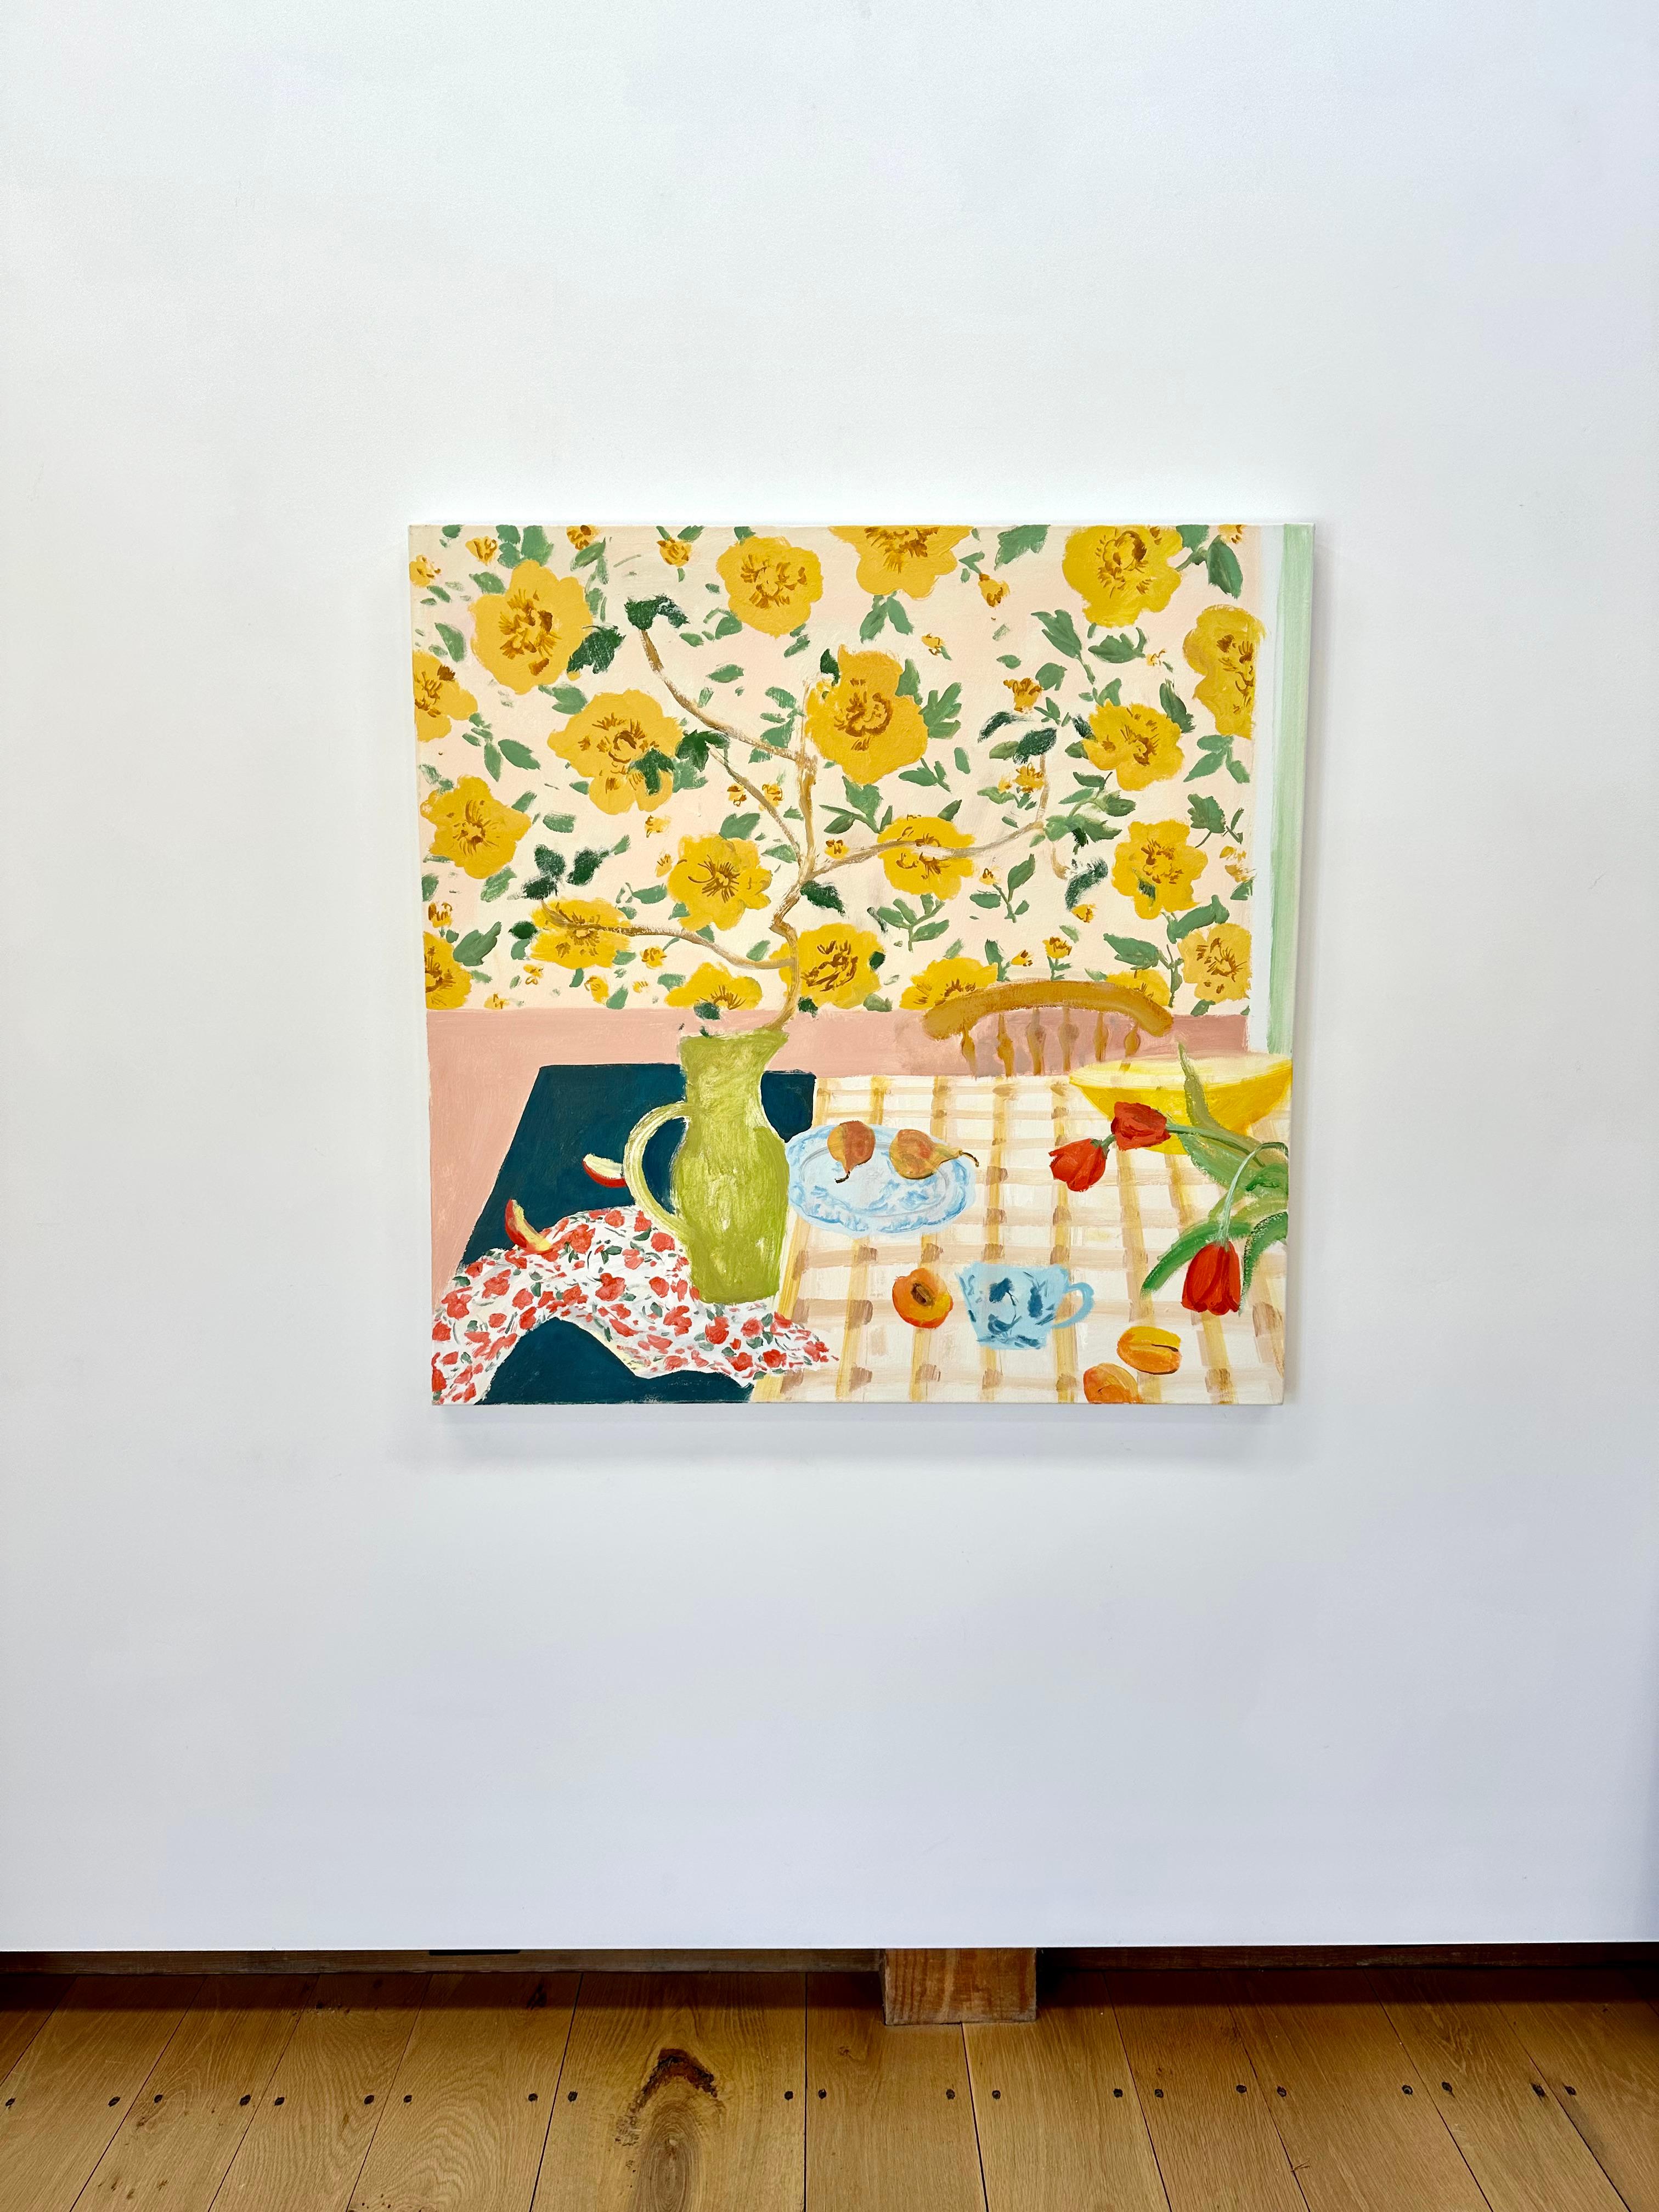 Poires et tiges, fleurs jaunes, tulipes rouges, fruits, poires, salle à manger - Painting de Melanie Parke